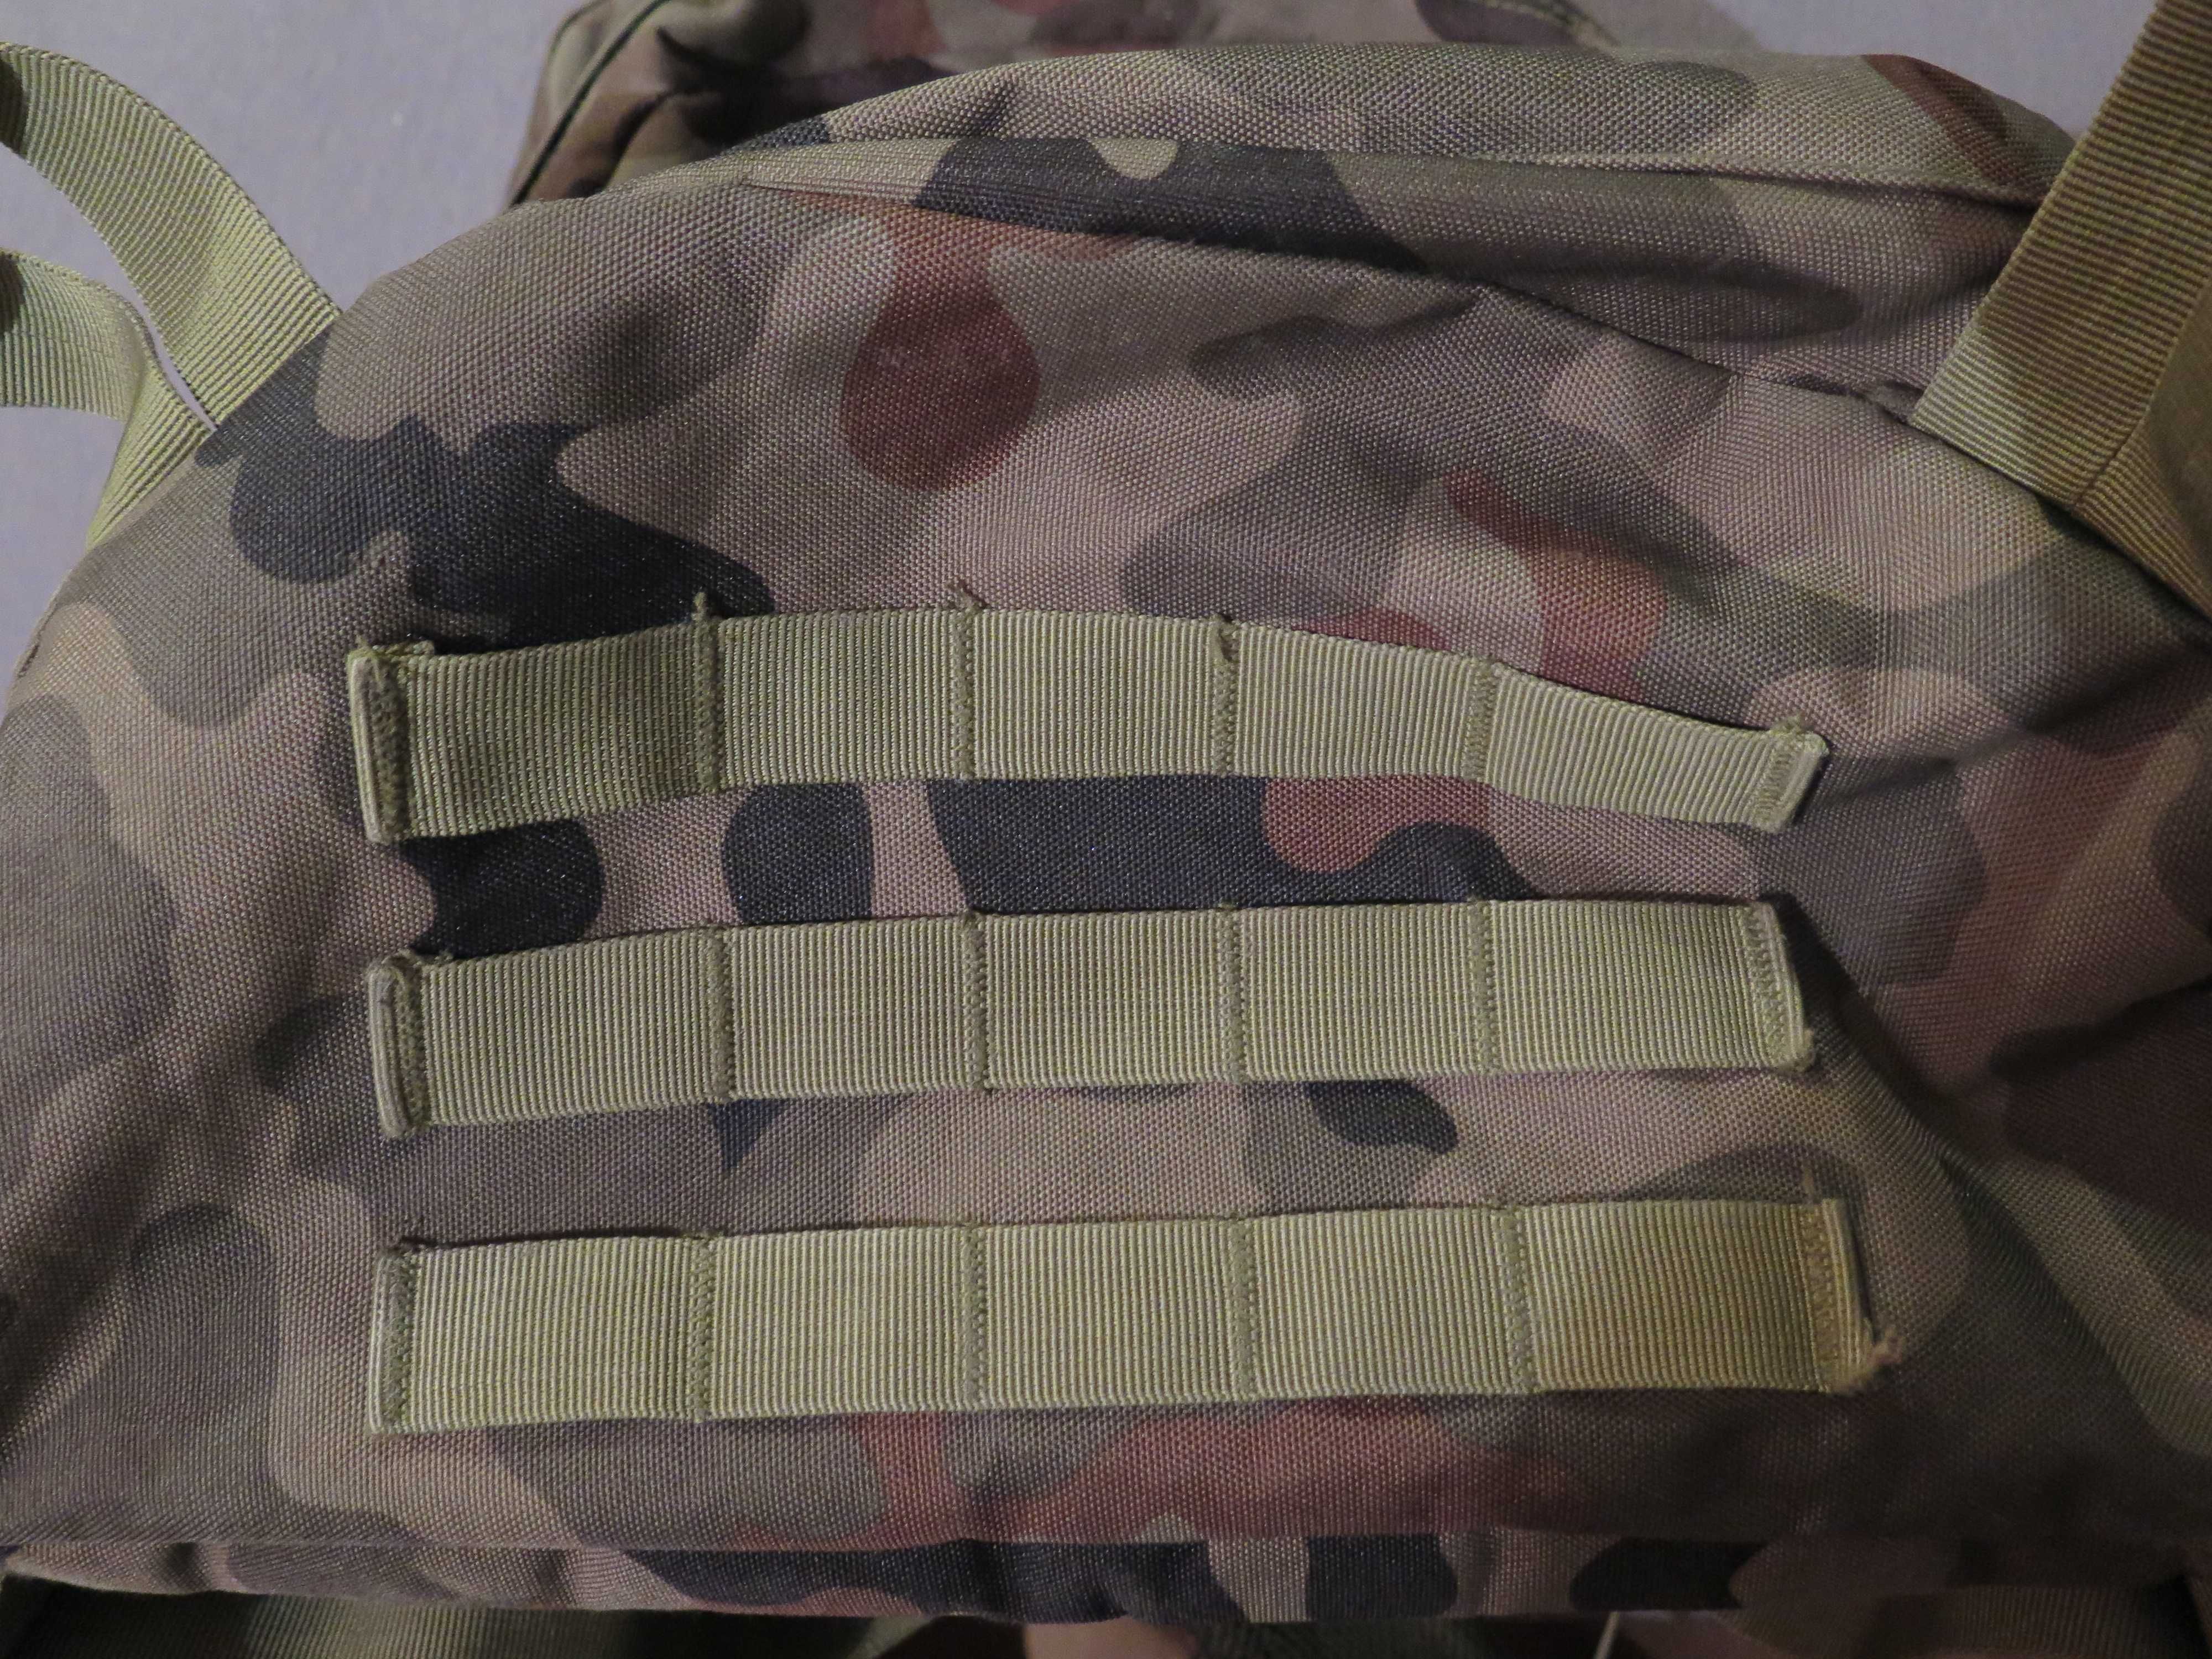 Plecak wojskowy wz 93.